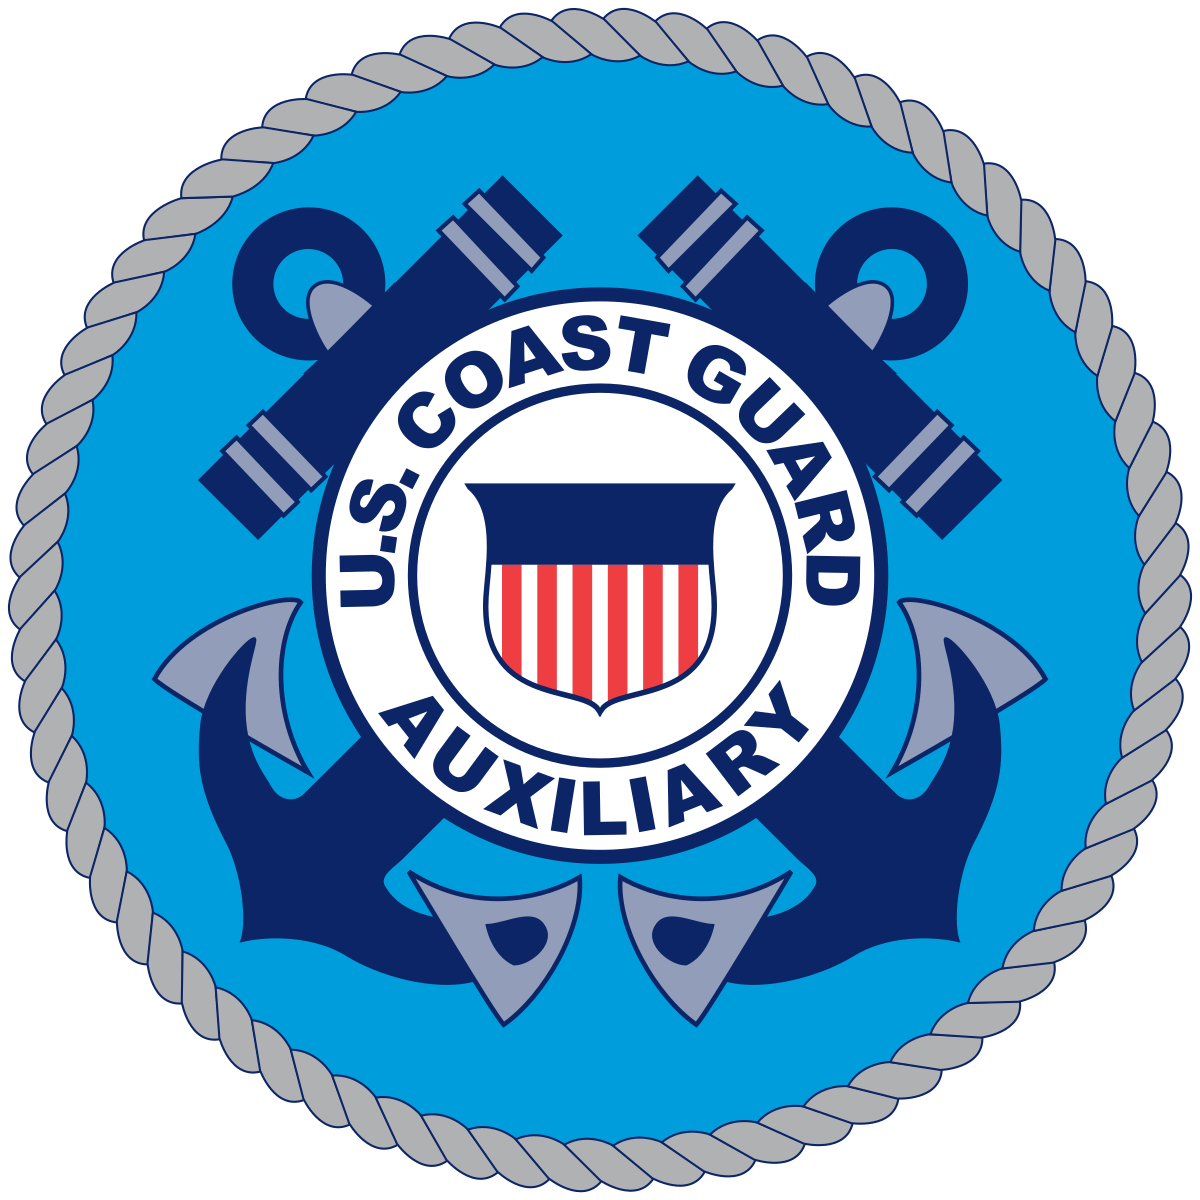 United States Coast Guard Auxiliary-